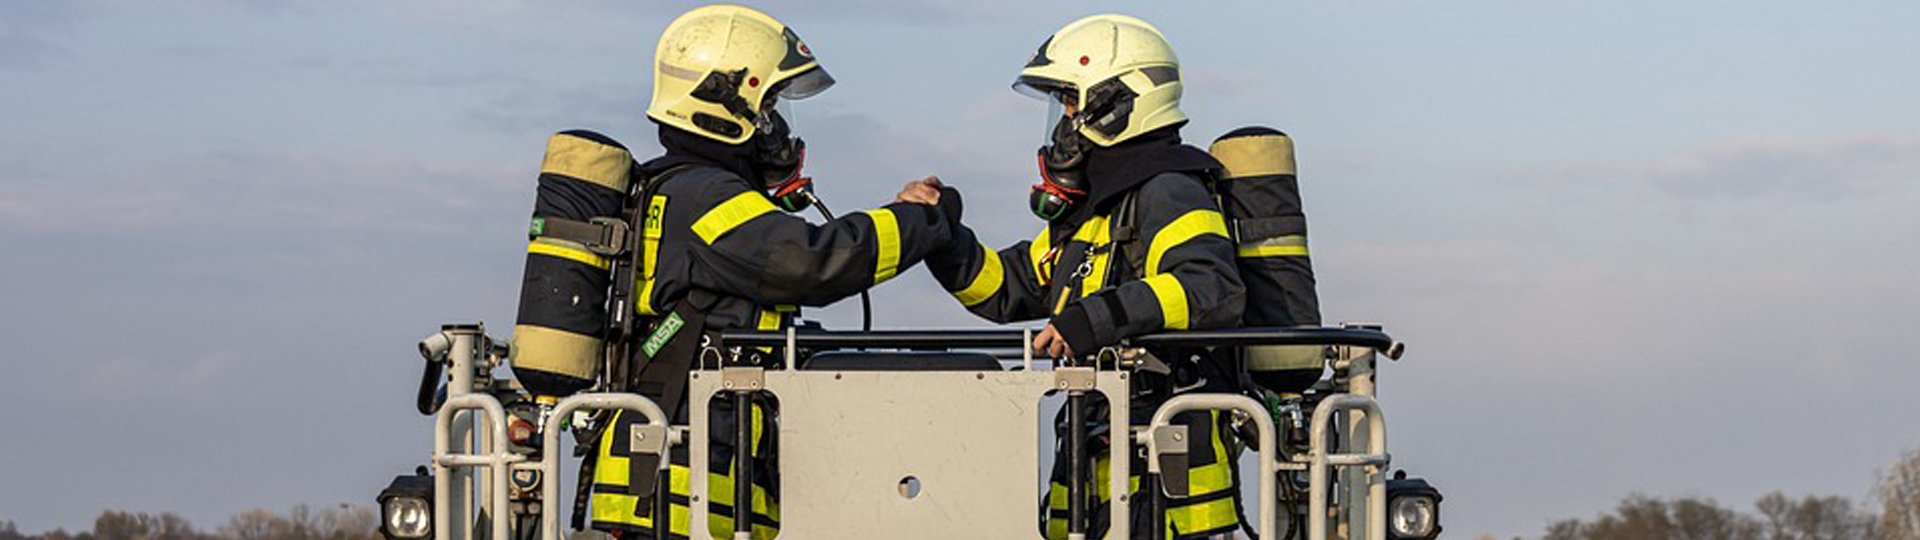 Diensthaftpflicht für Beamte bei der Feuerwehr | DBV Freiberg Roy Bach